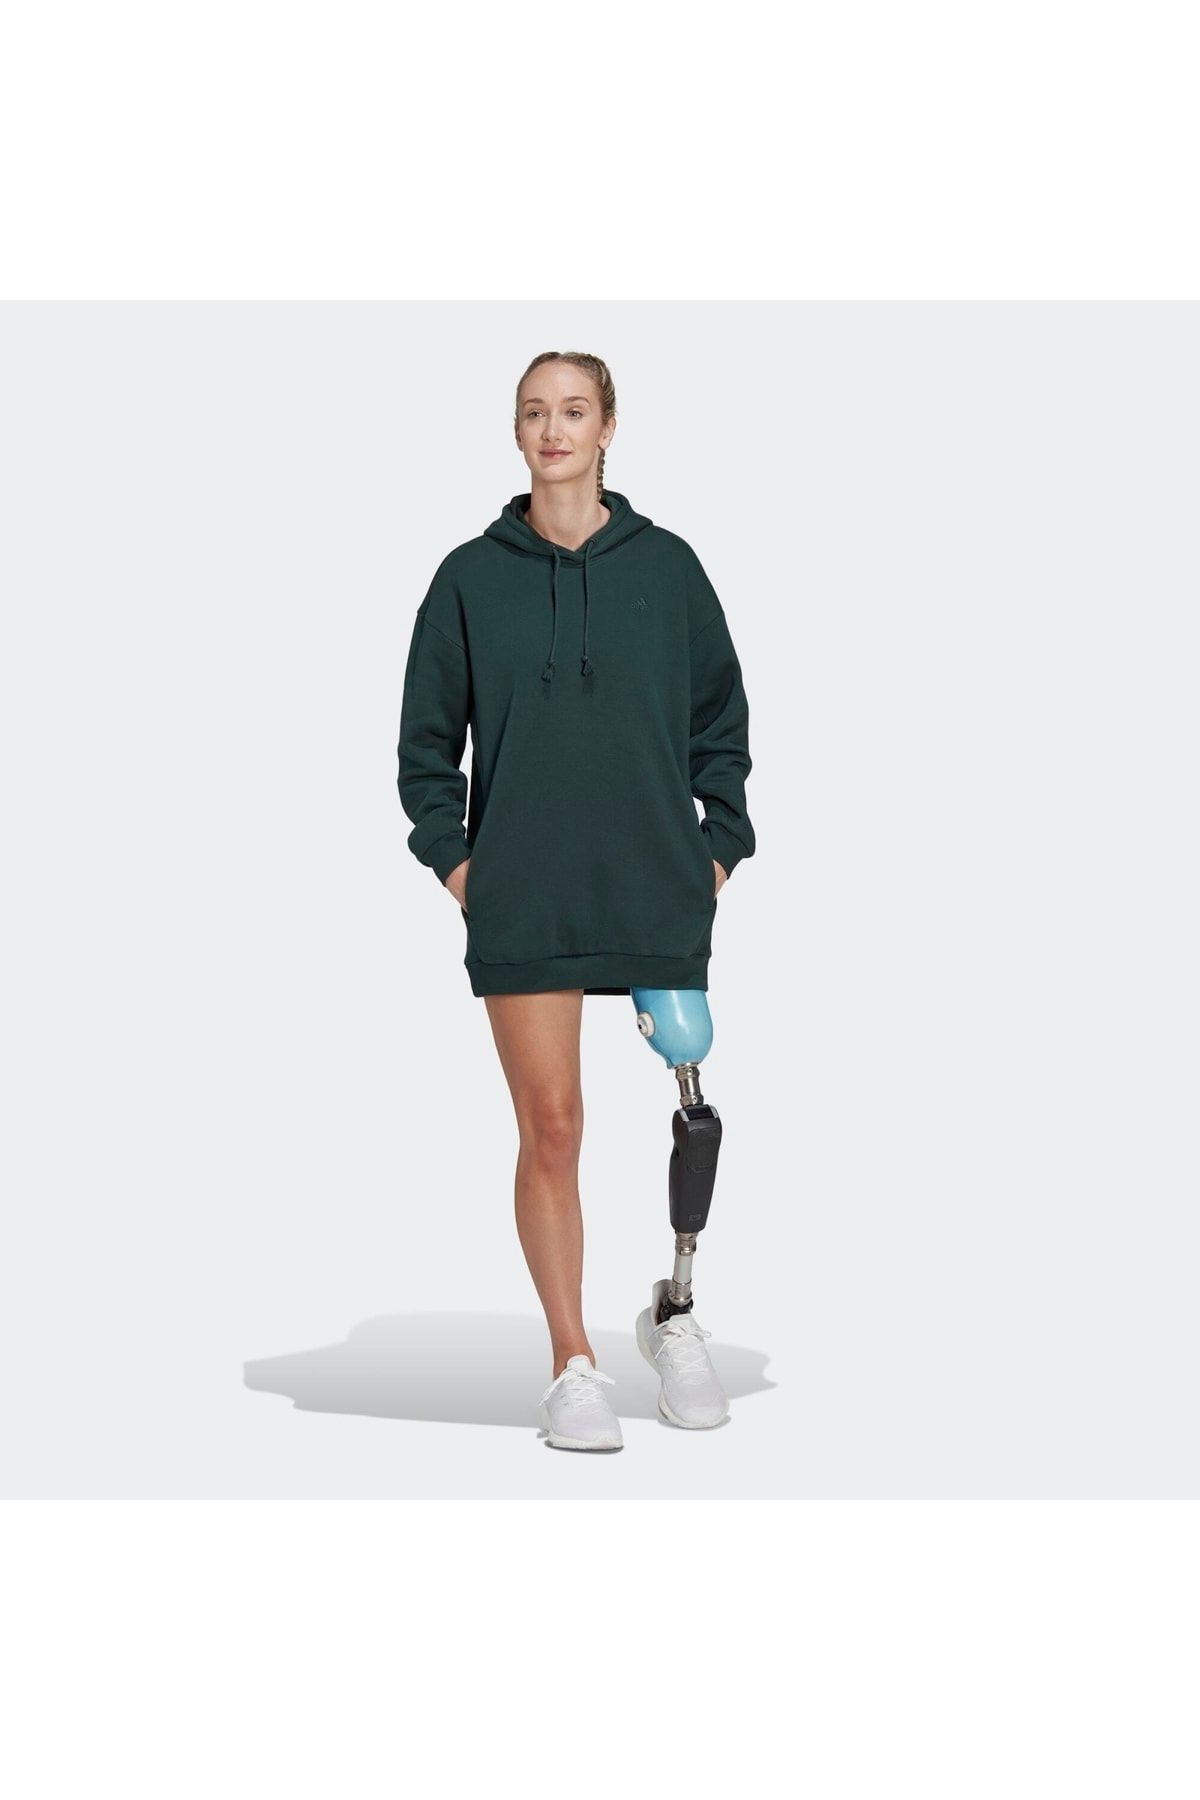 adidas All Szn Kadın Yeşil Sweatshirt (hn4228)